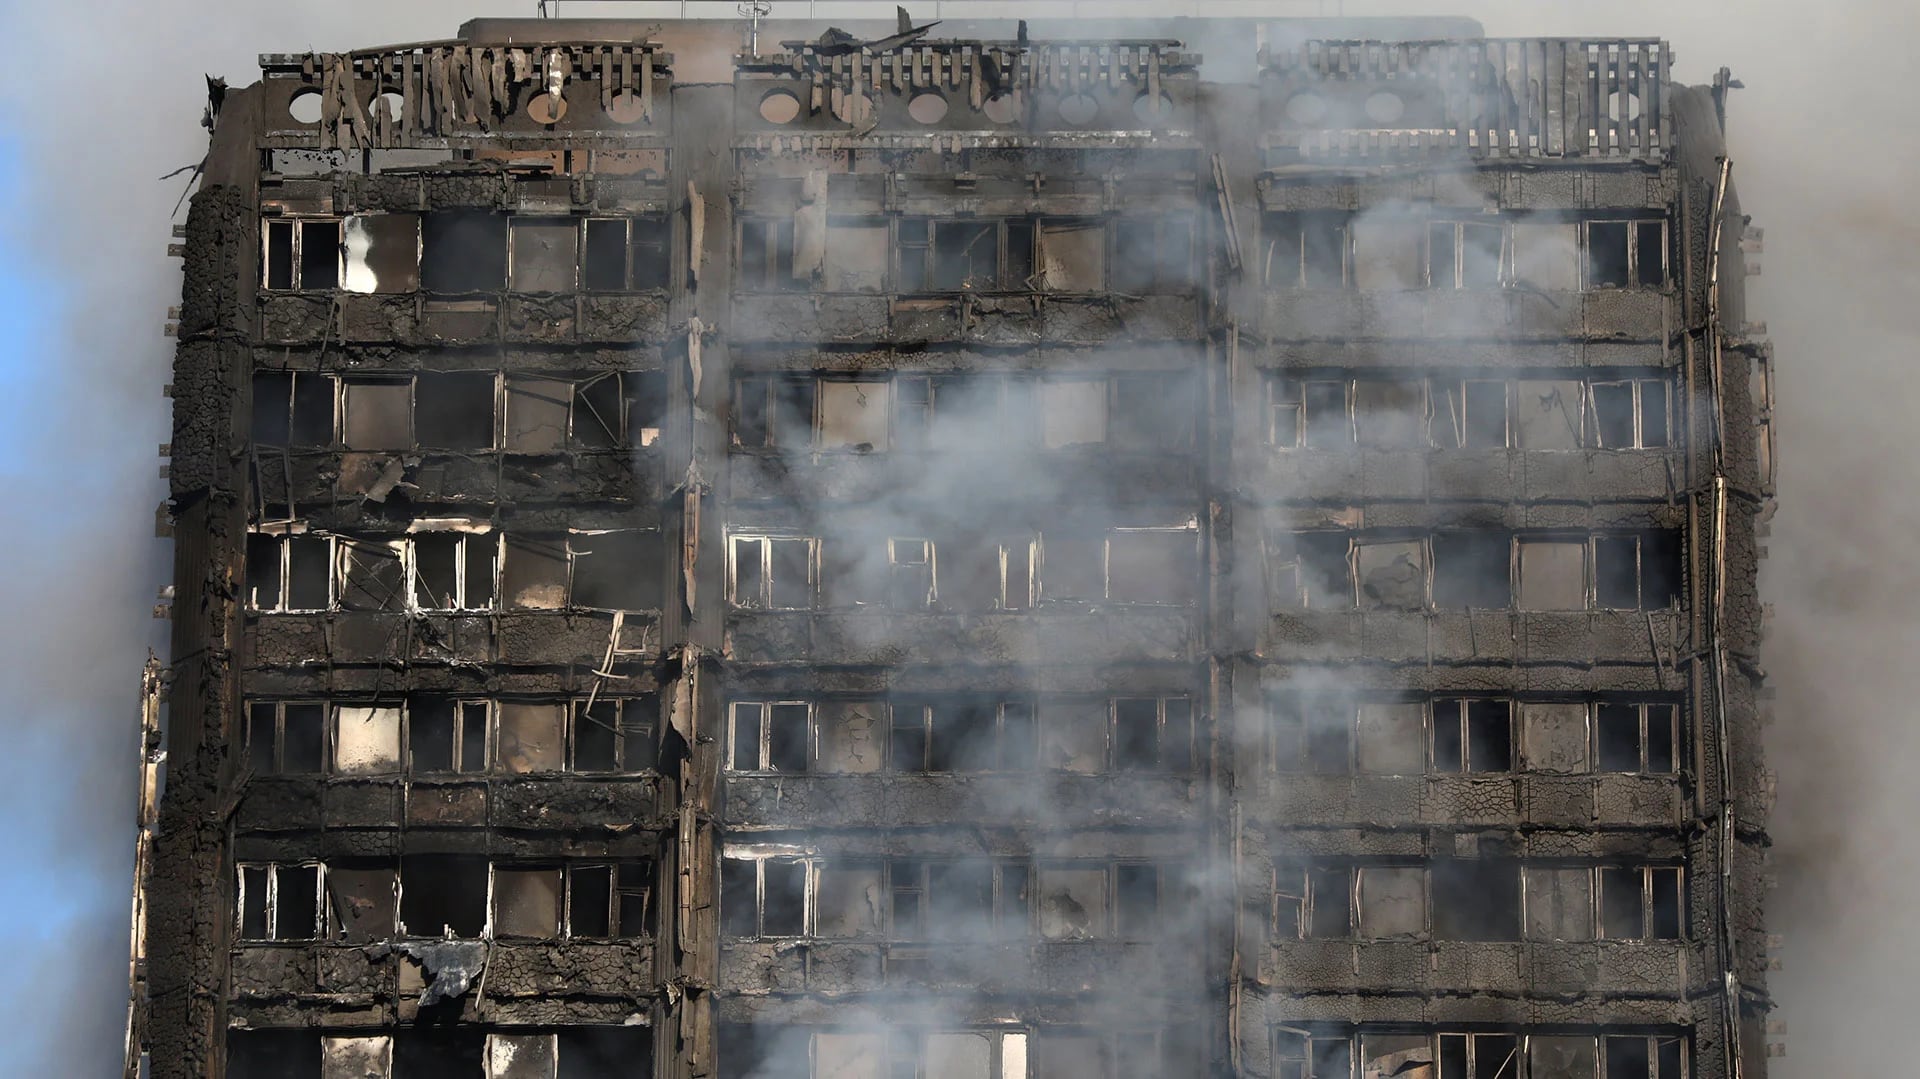 El edificio quedó rápidamente envuelto en llamas, atrapando a decenas de personas en su interior (Reuters)